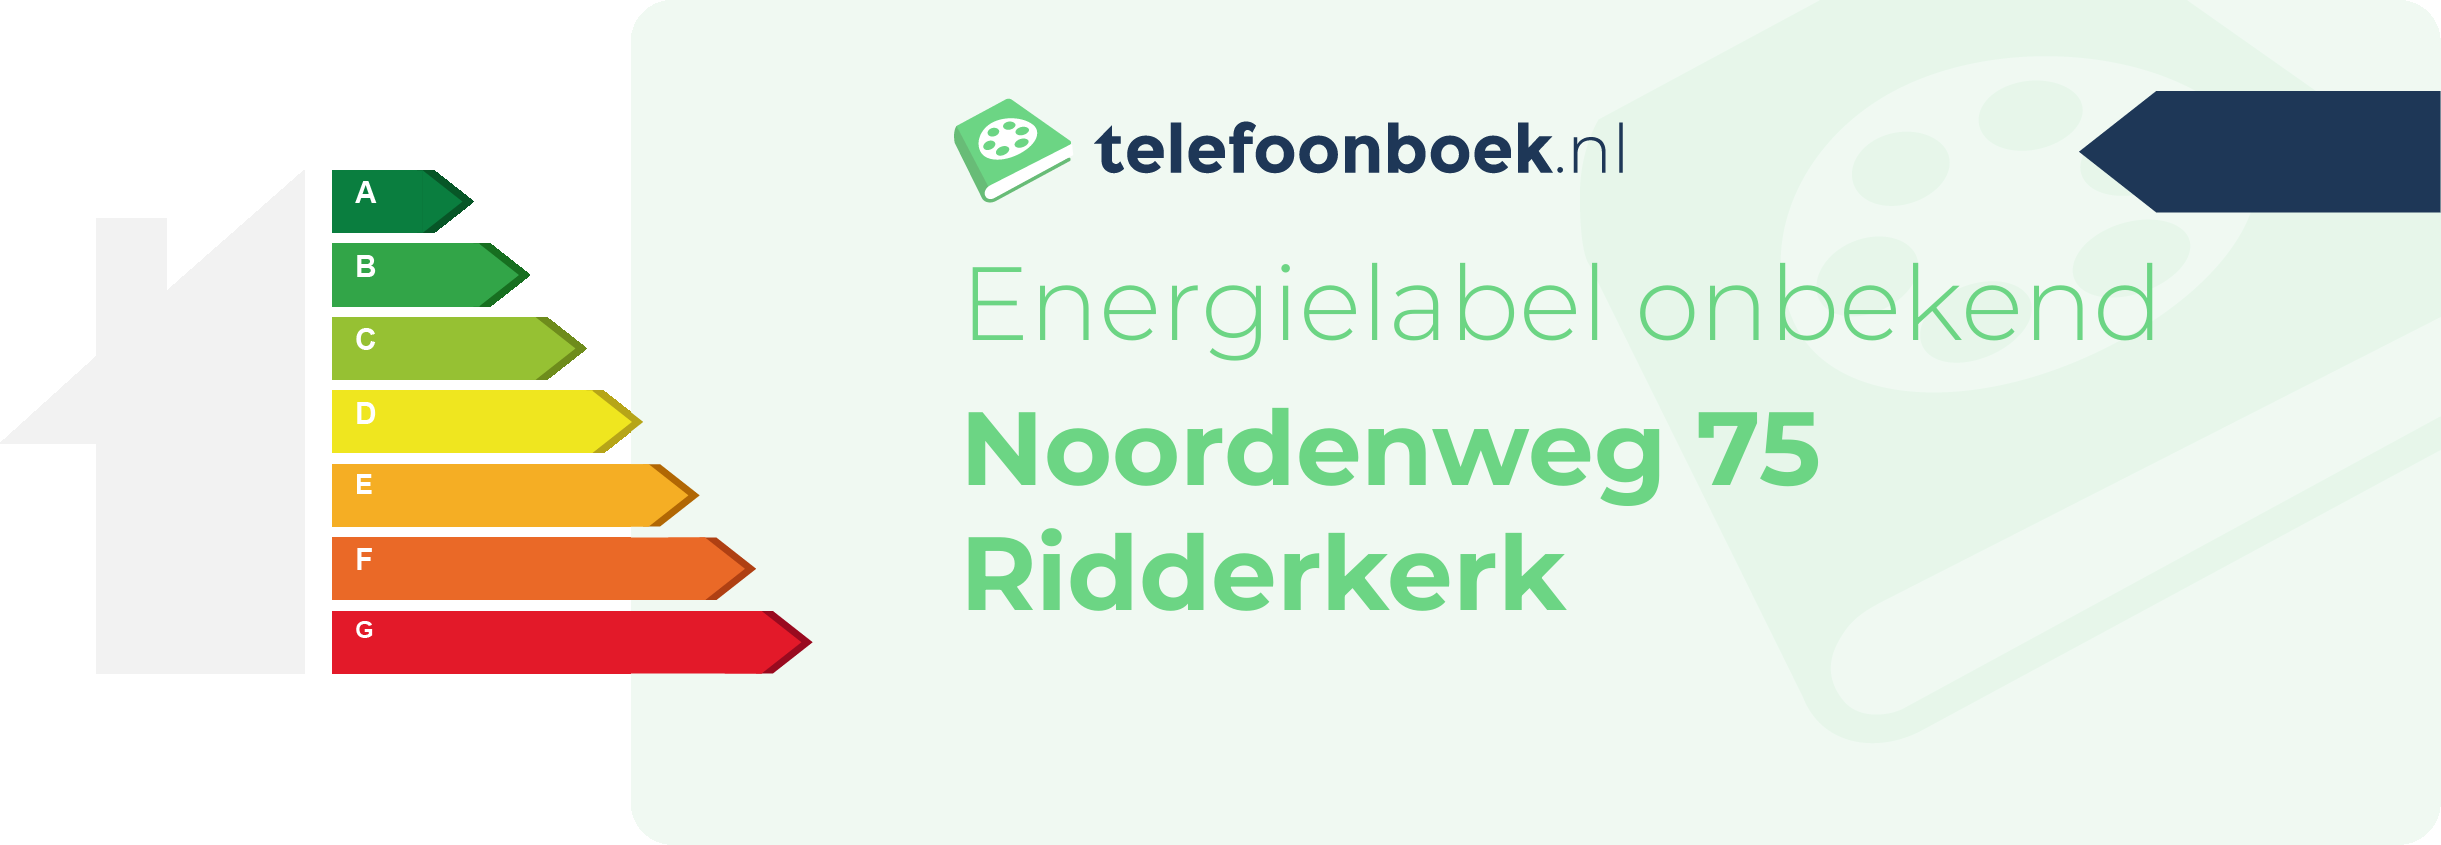 Energielabel Noordenweg 75 Ridderkerk